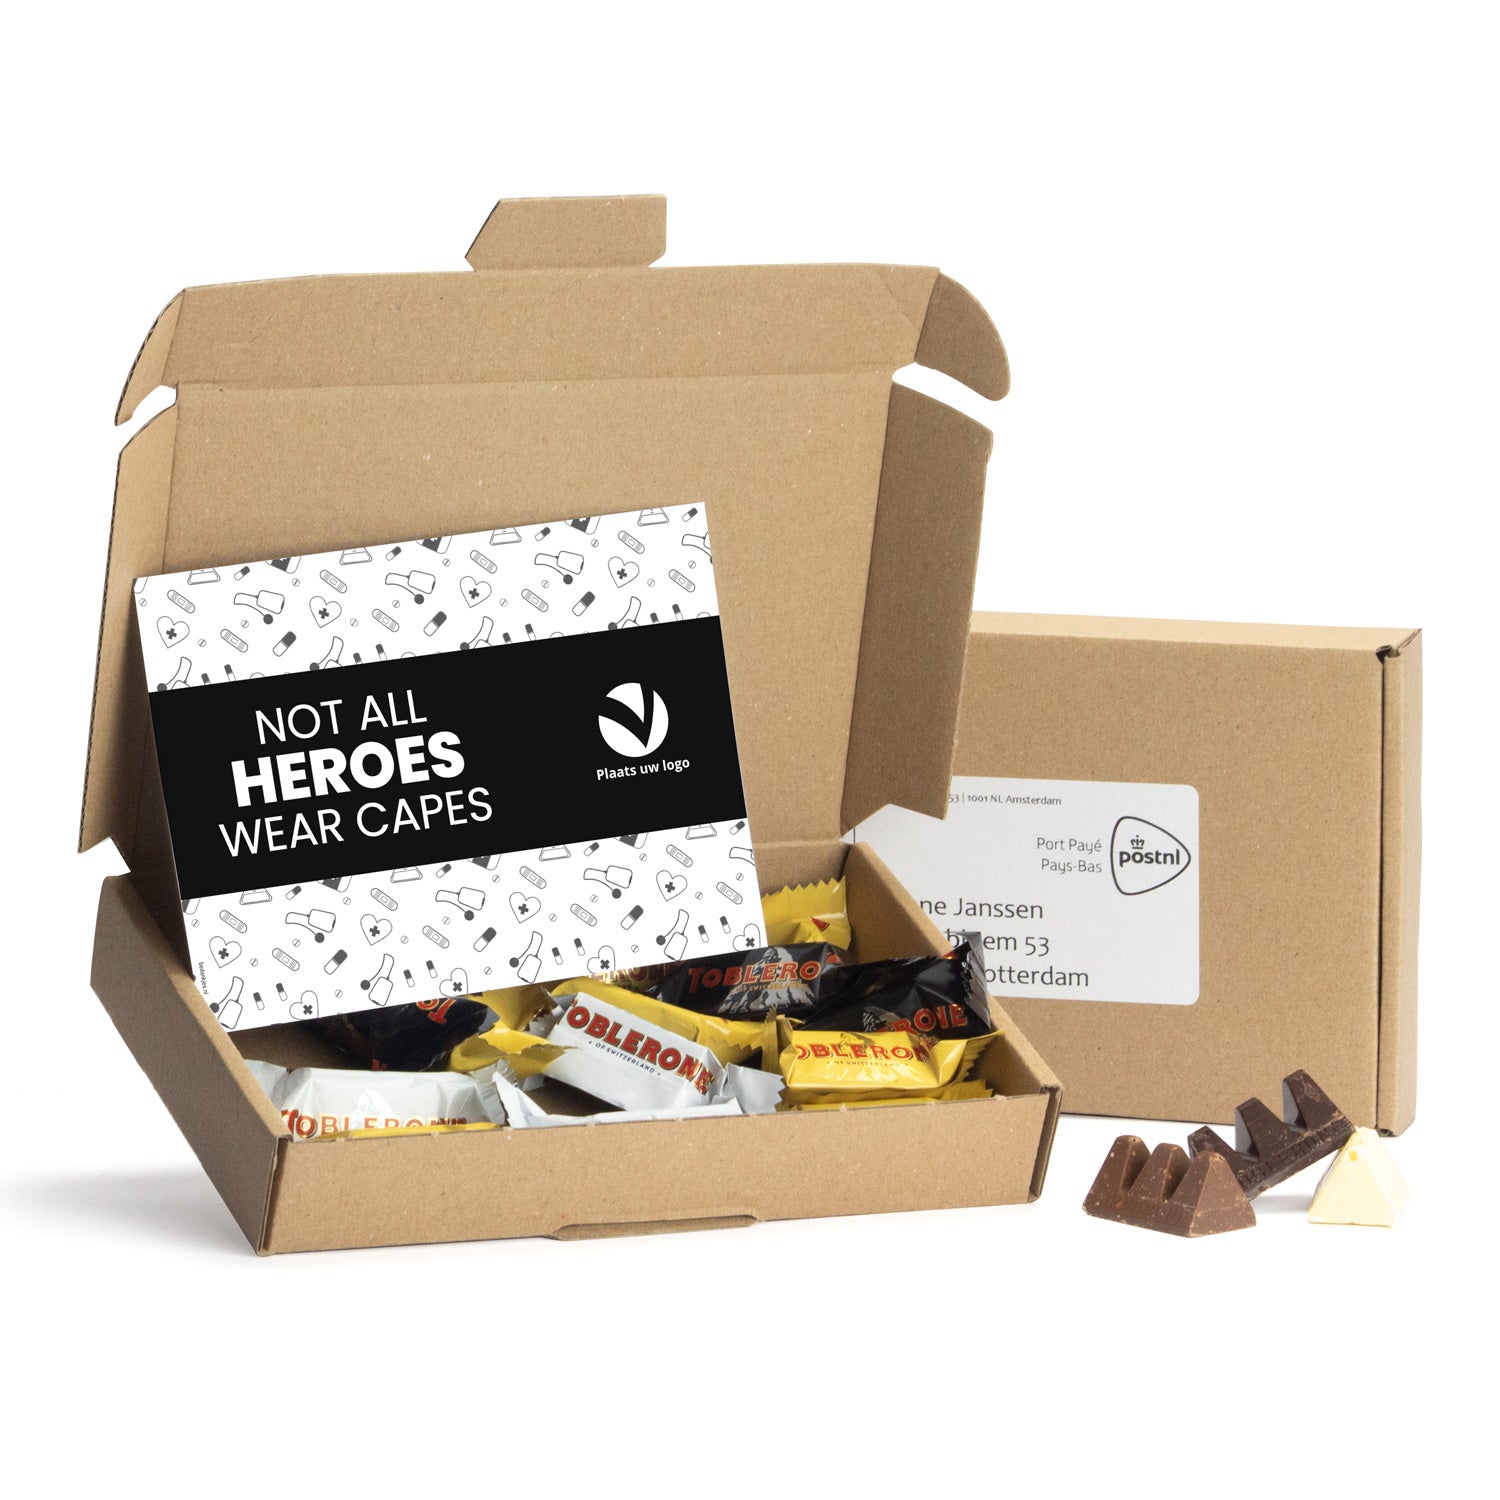 Topperpakket met Toblerone chocolade - Verpleging - Bedankjes.nl